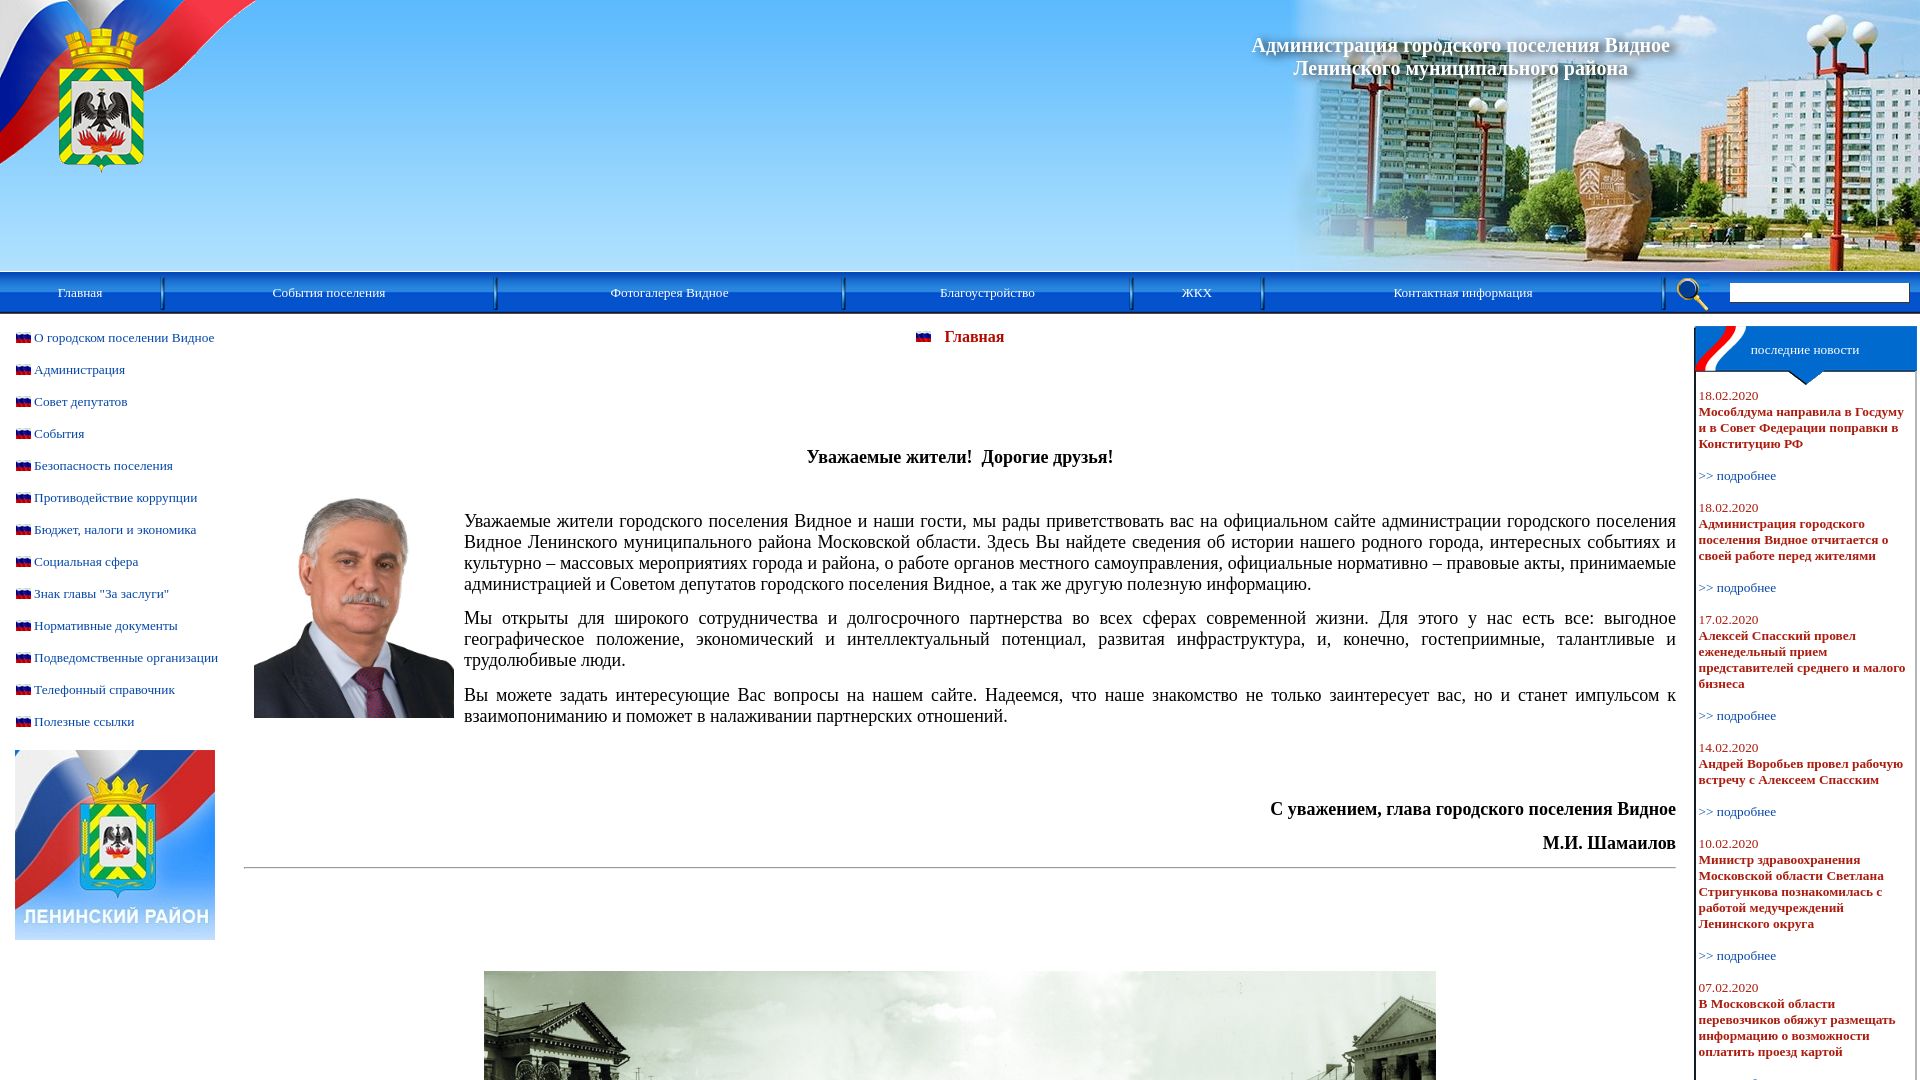 Webseitenstatus albonumismatico.ru ist   ONLINE